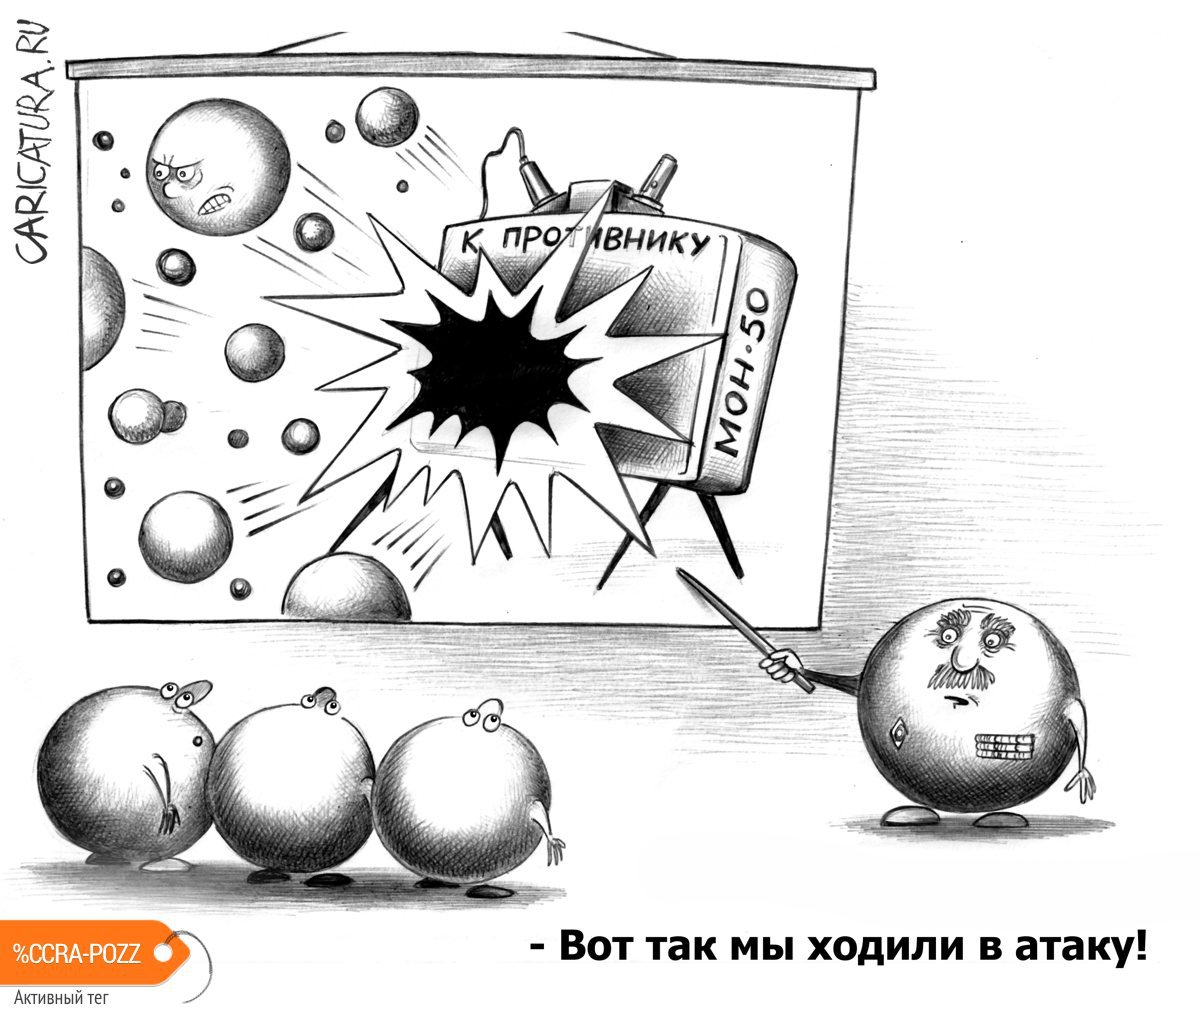 Карикатура "Атака", Сергей Корсун